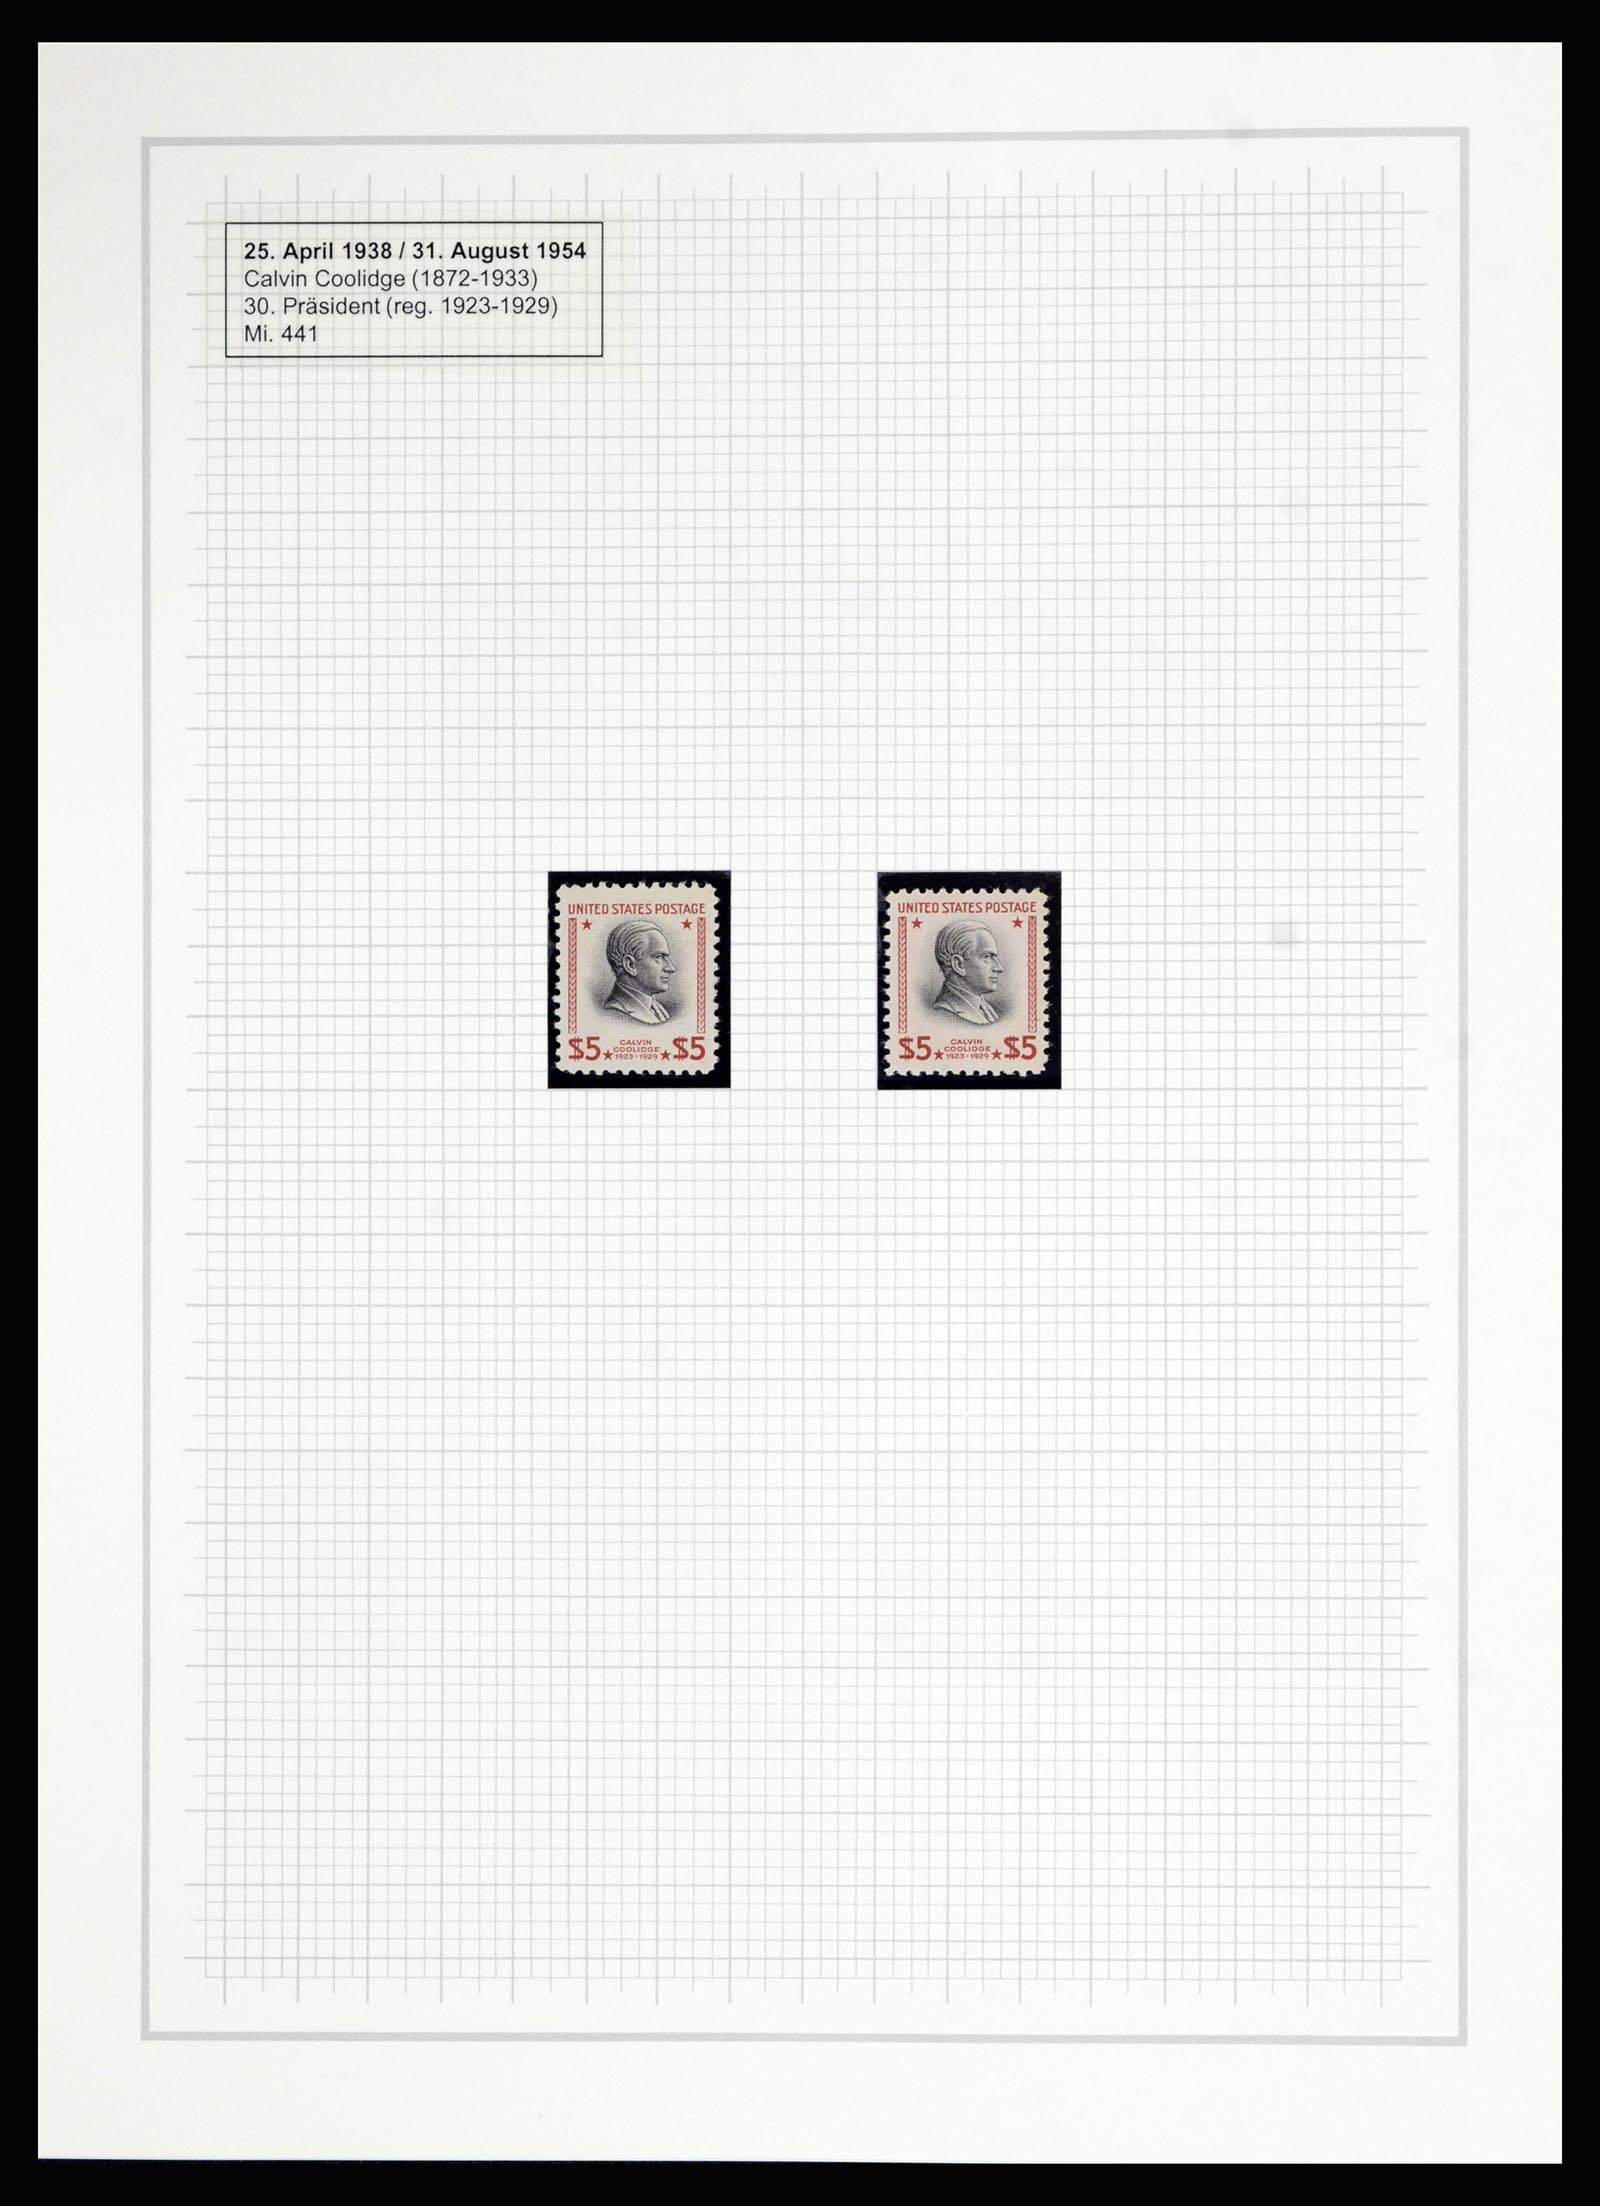 36909 315 - Stamp collection 36909 USA 1938-1954.